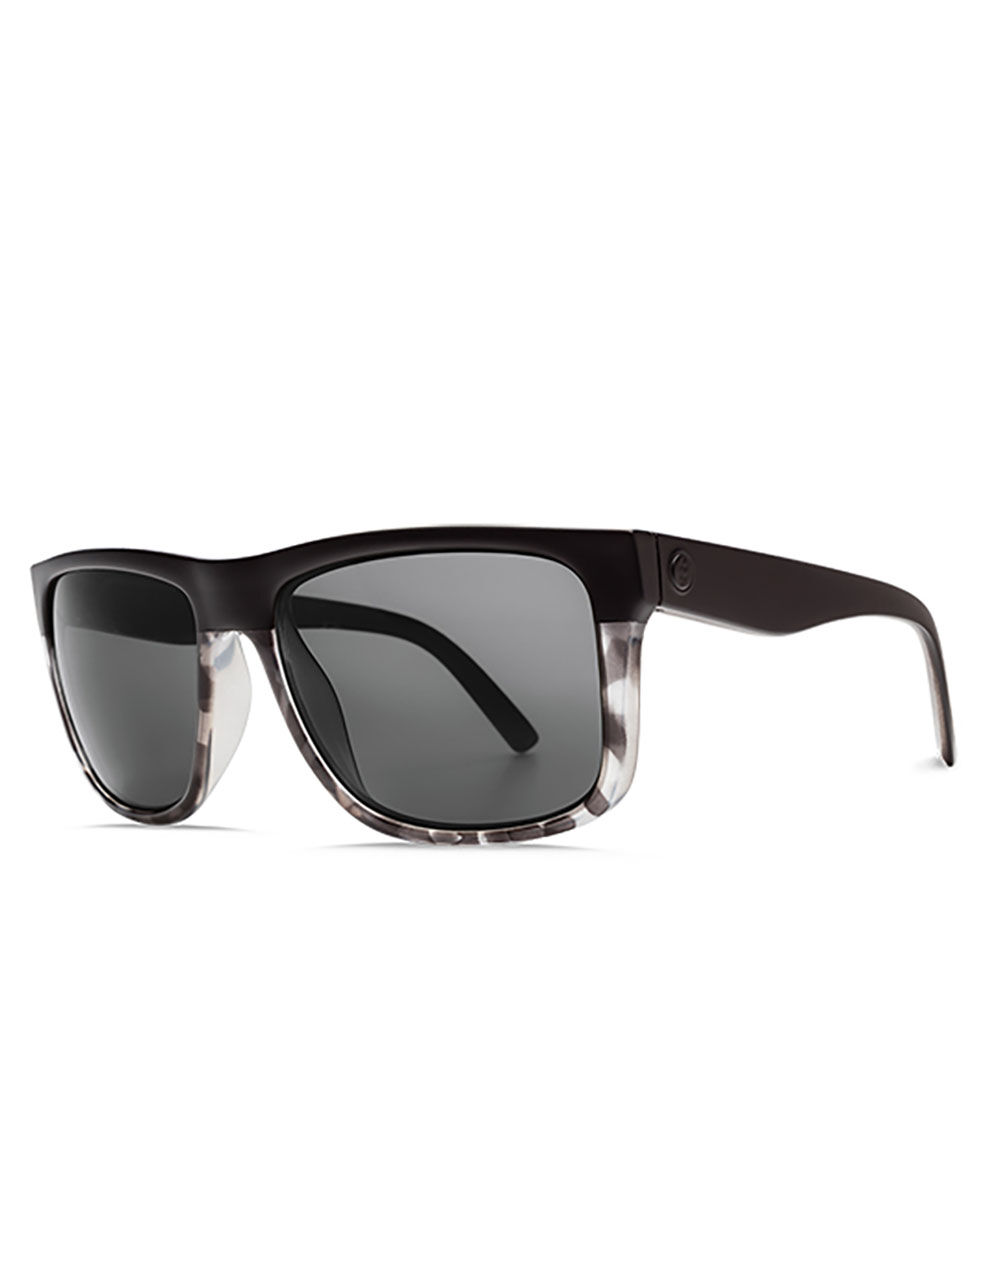 ELECTRIC Swingarm XL Darkstone Polarized Sunglasses